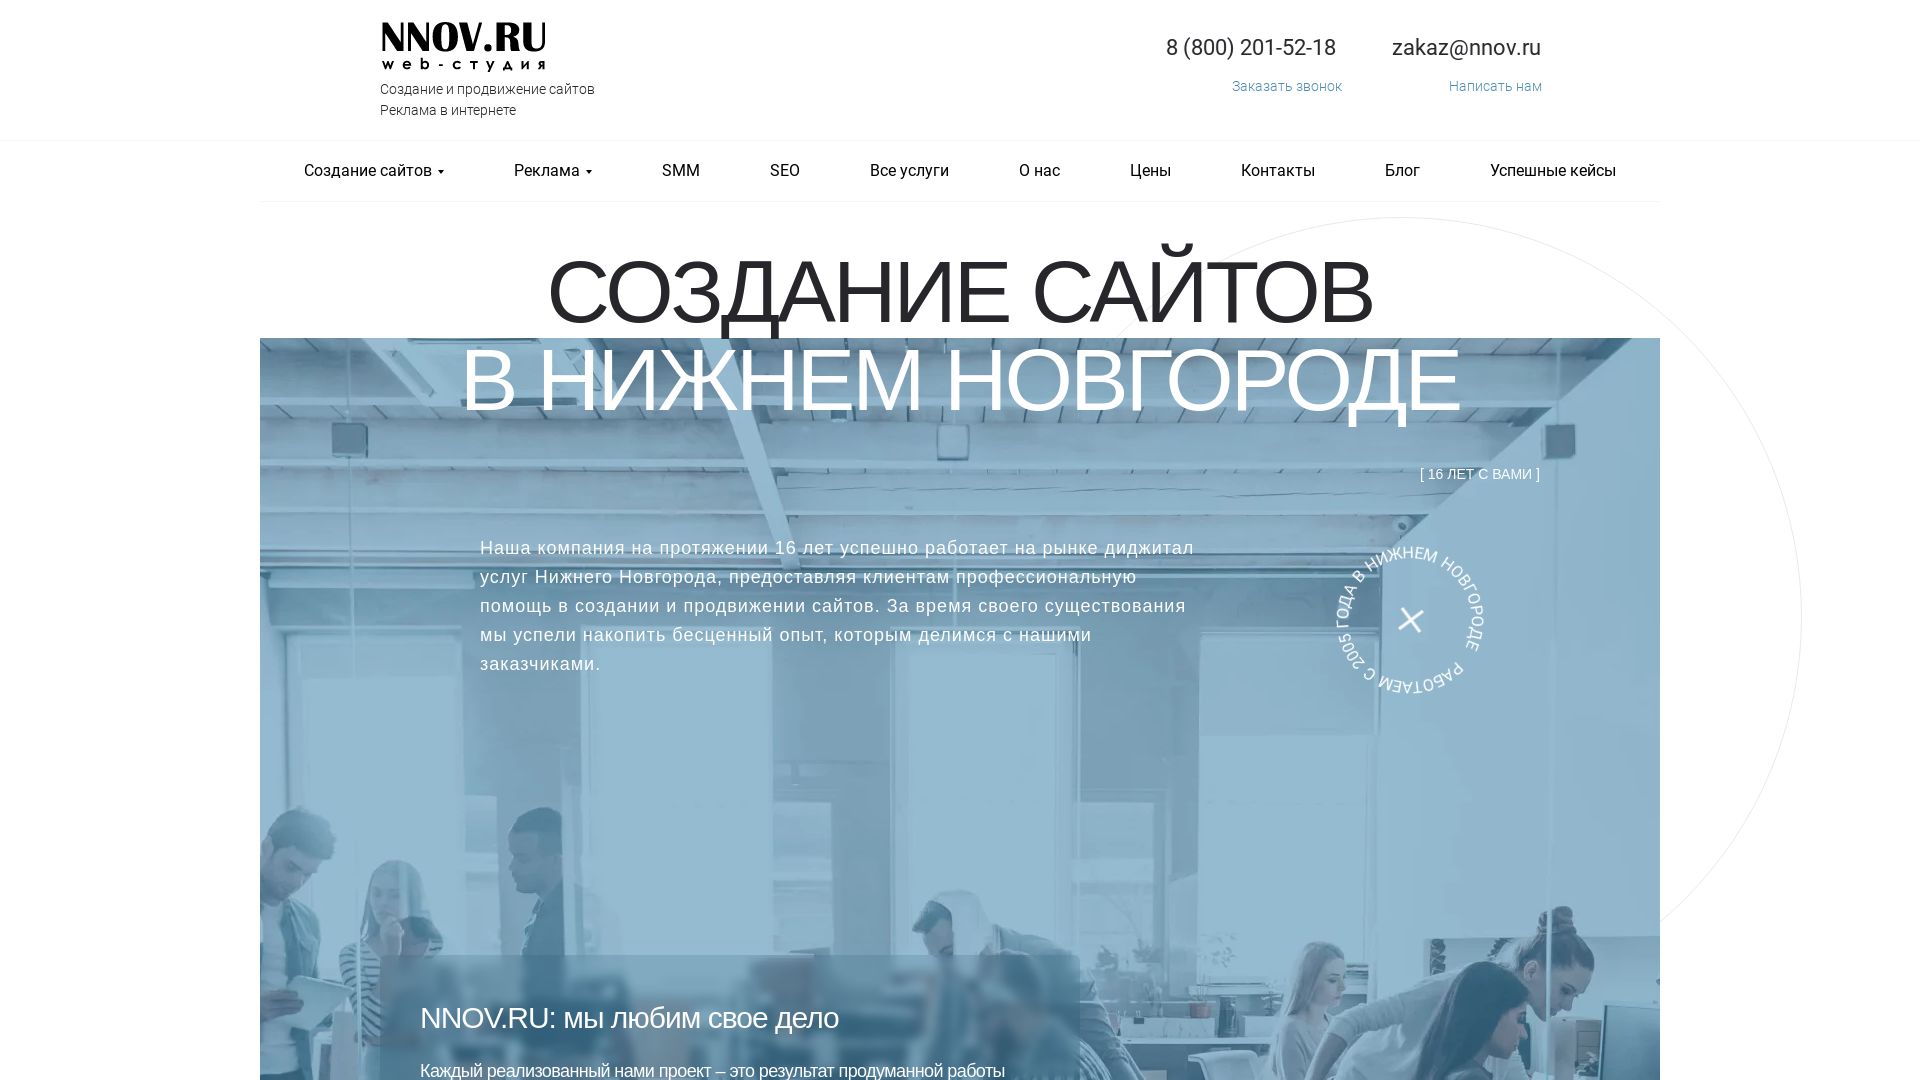 Webseitenstatus nnov.ru ist   ONLINE